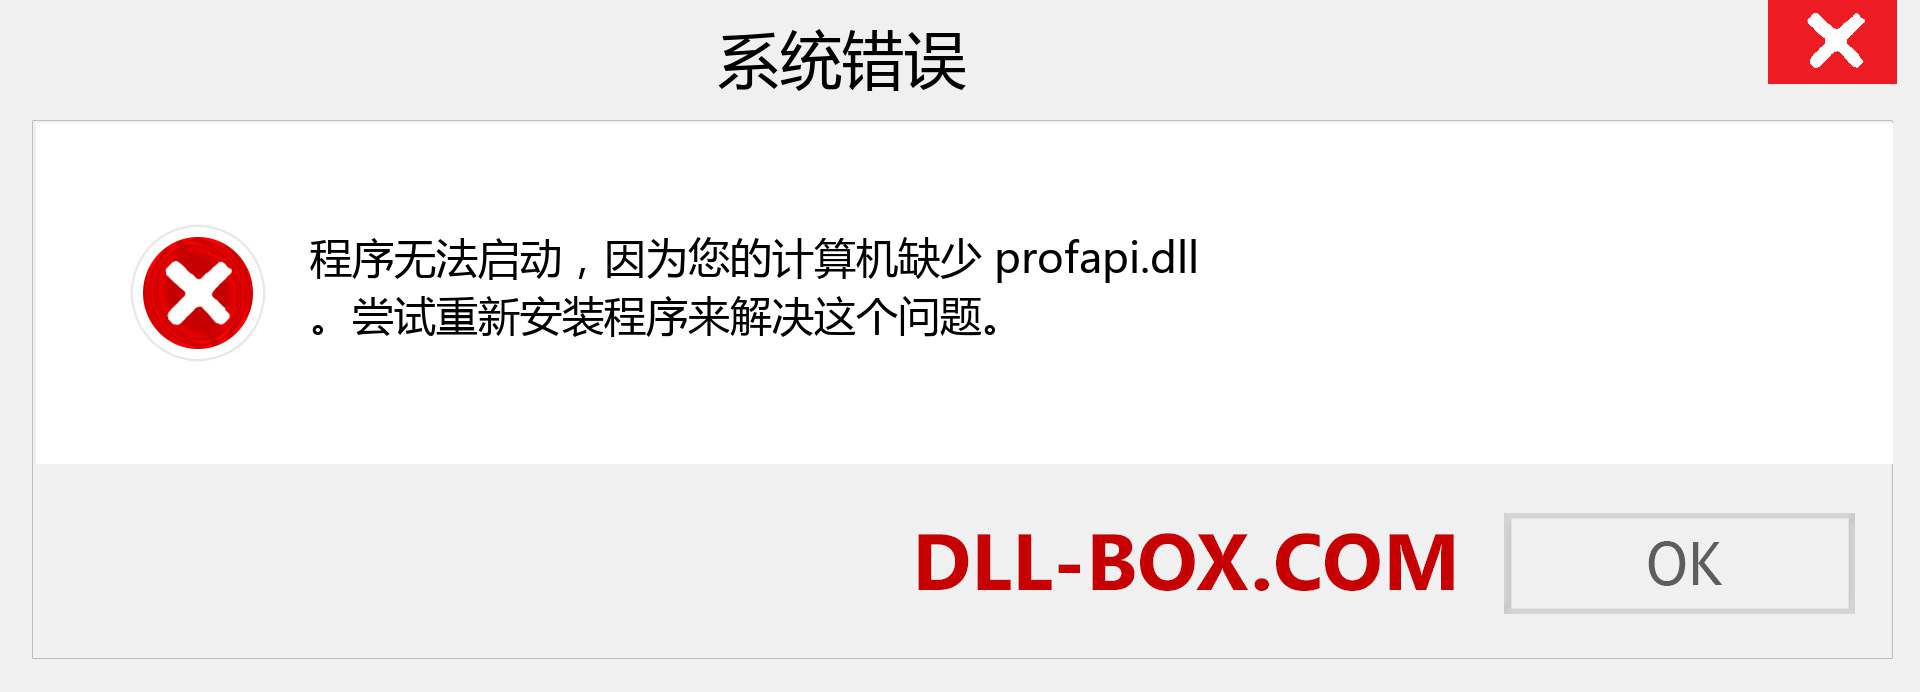 profapi.dll 文件丢失？。 适用于 Windows 7、8、10 的下载 - 修复 Windows、照片、图像上的 profapi dll 丢失错误